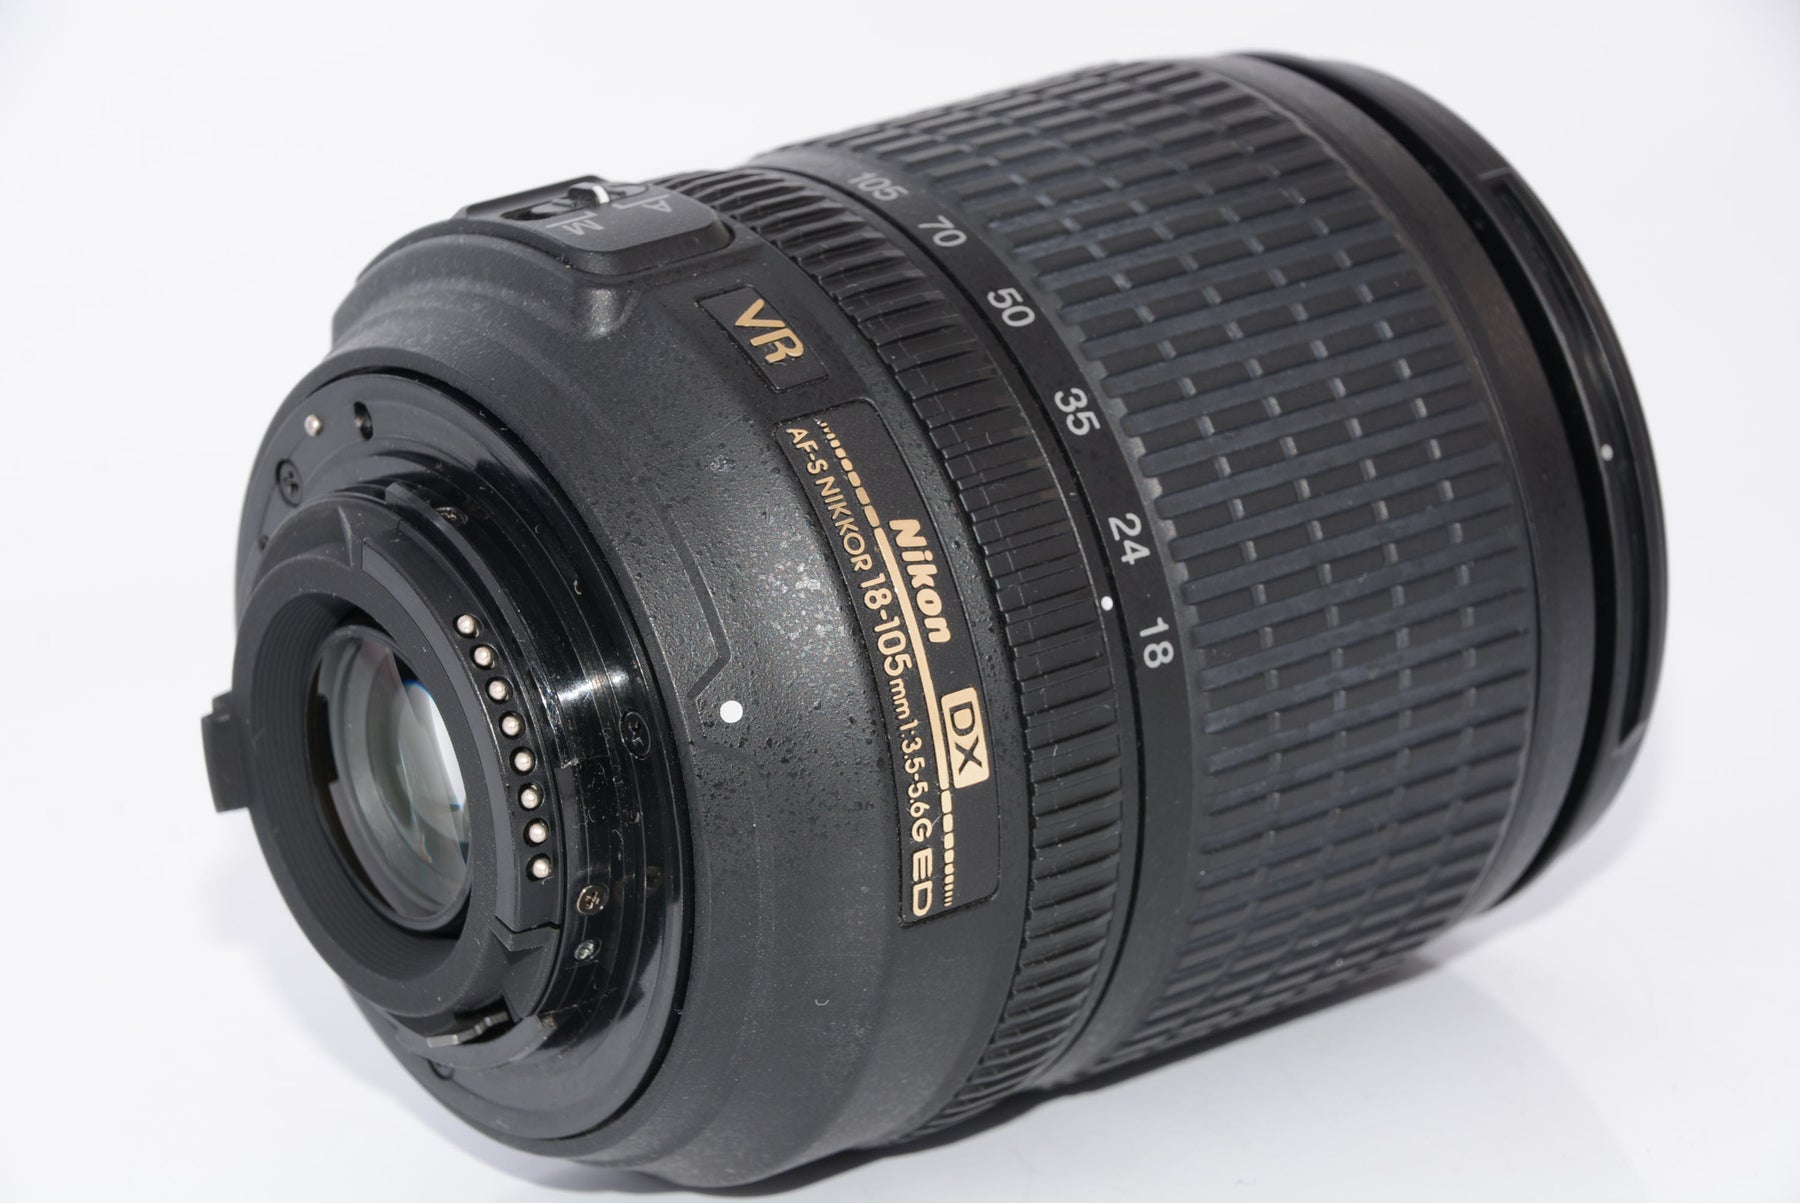 外観特上級】Nikon 標準ズームレンズ AF-S DX NIKKOR 18-105mm f/3.5